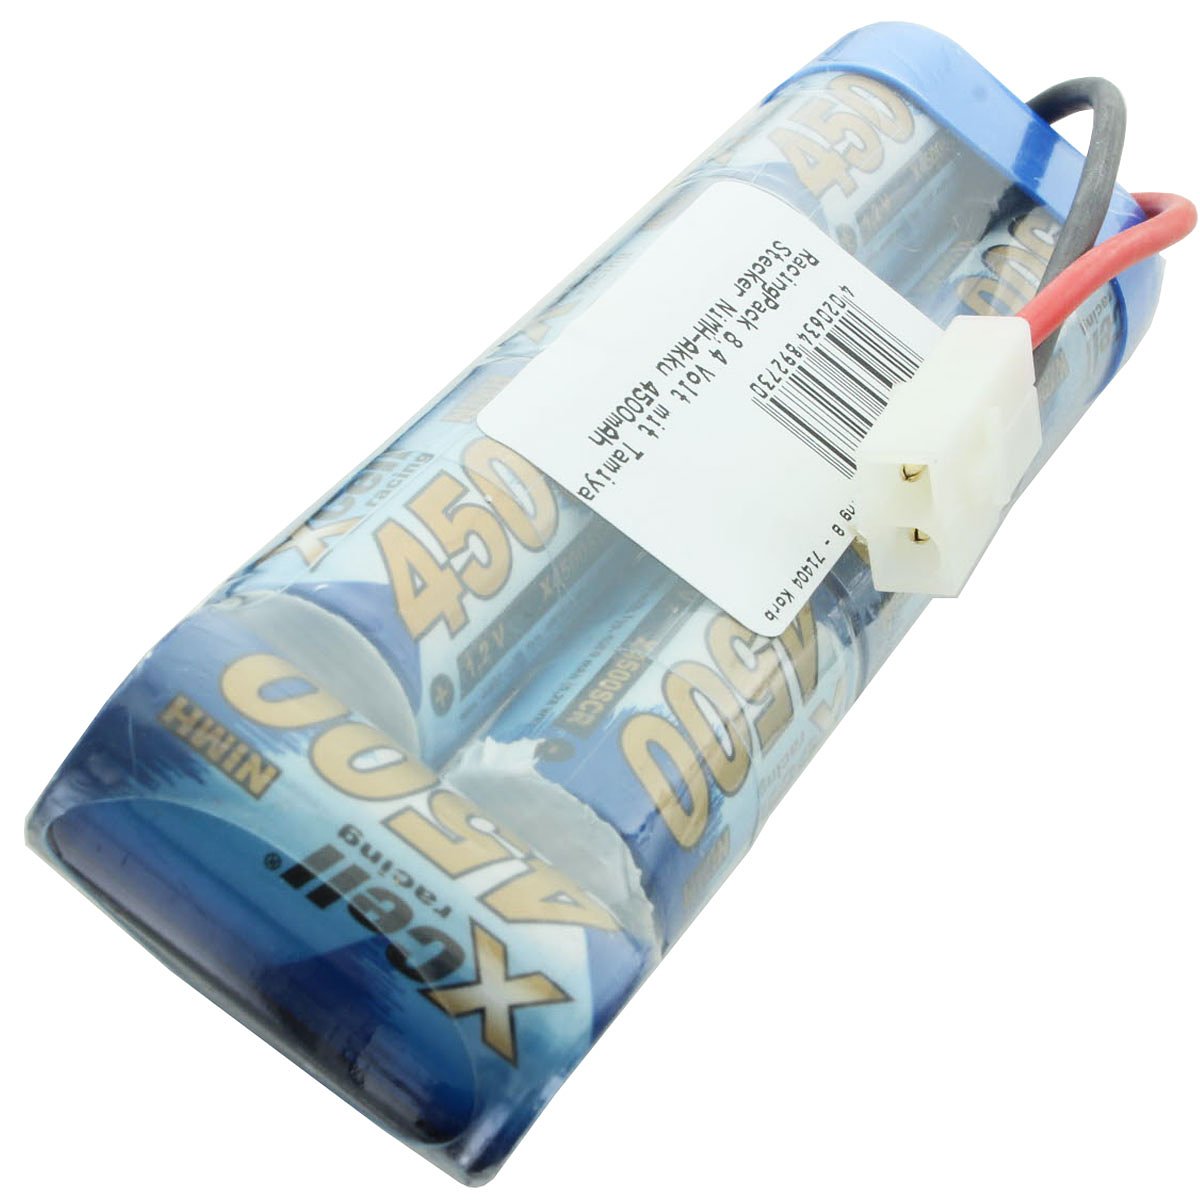 RacingPack 8.4 volts with Tamiya plug NiMH battery 4500mAh